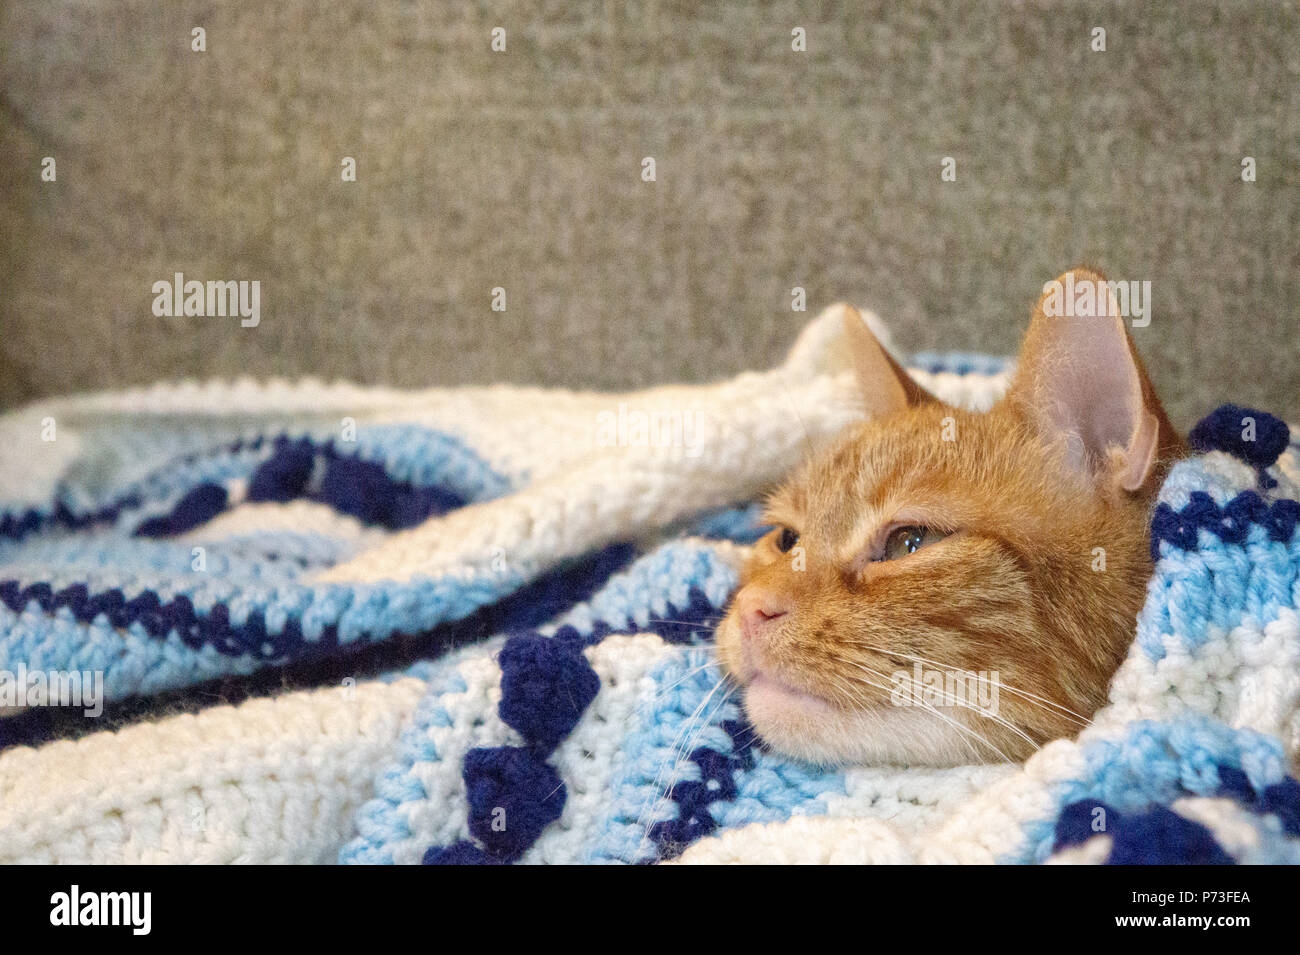 Un chat orange à cajoler dans une maison bleu couverture sur une journée froide Banque D'Images